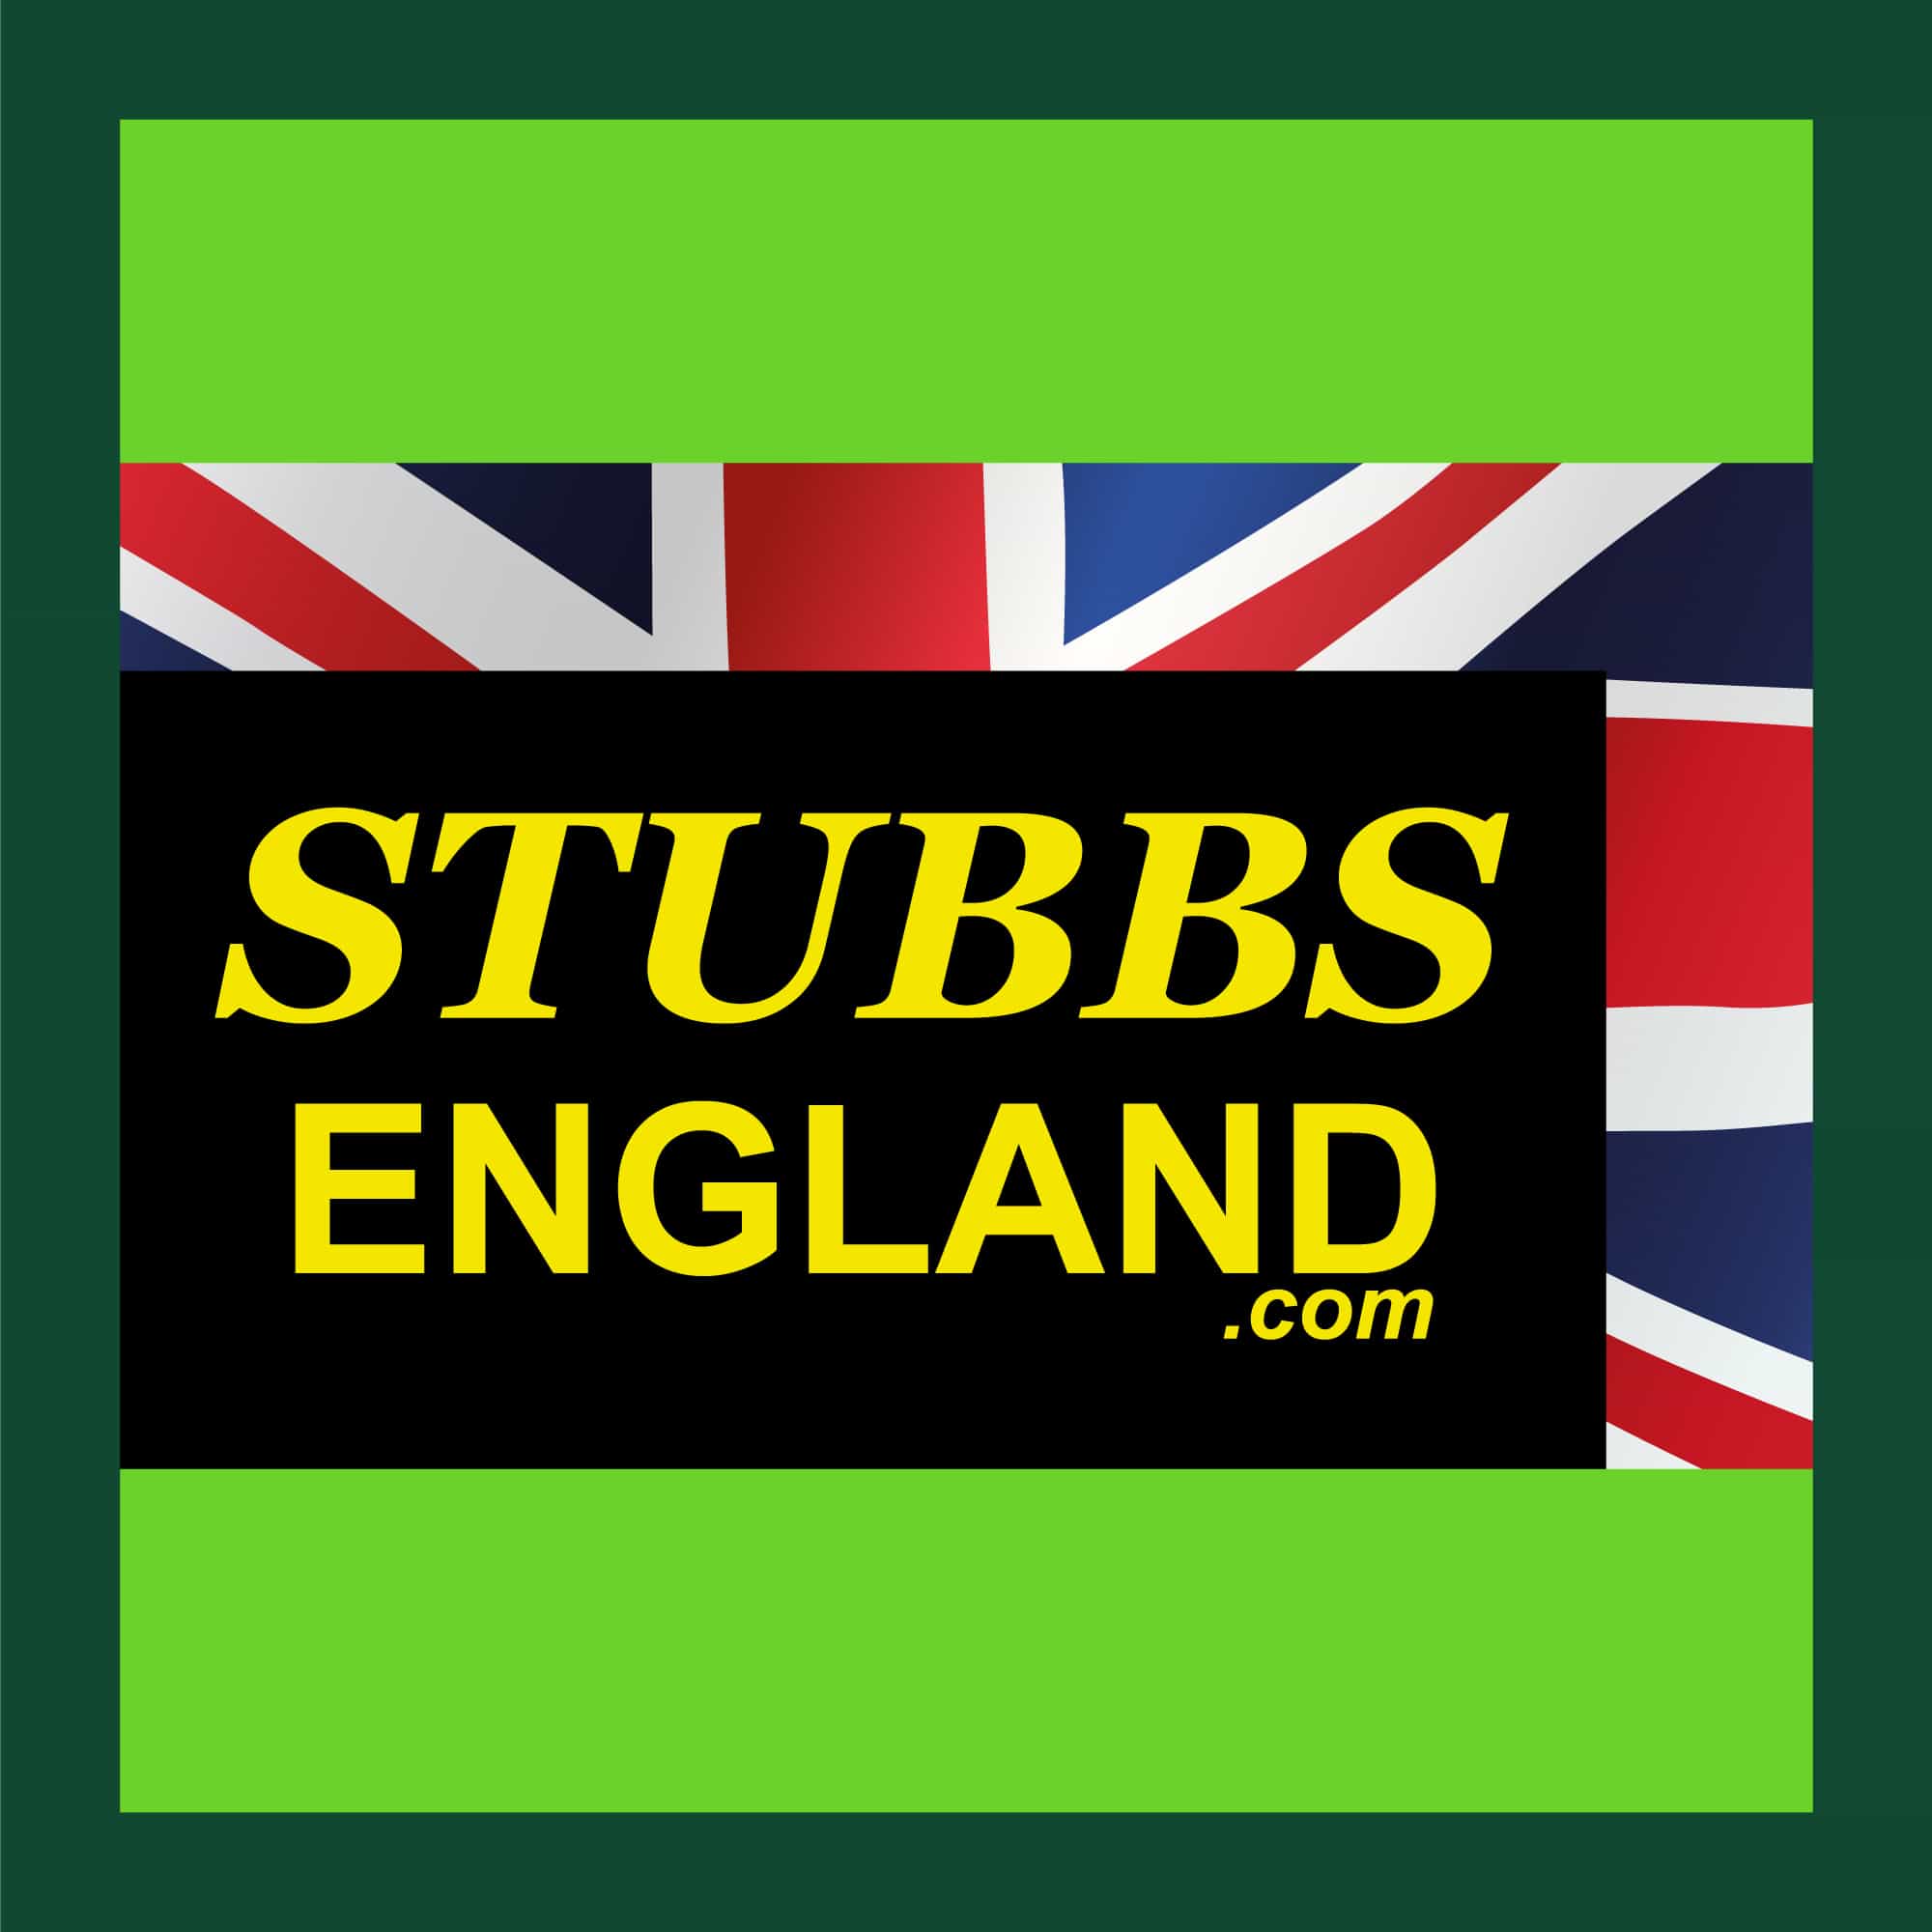 Stubbs England green square logo